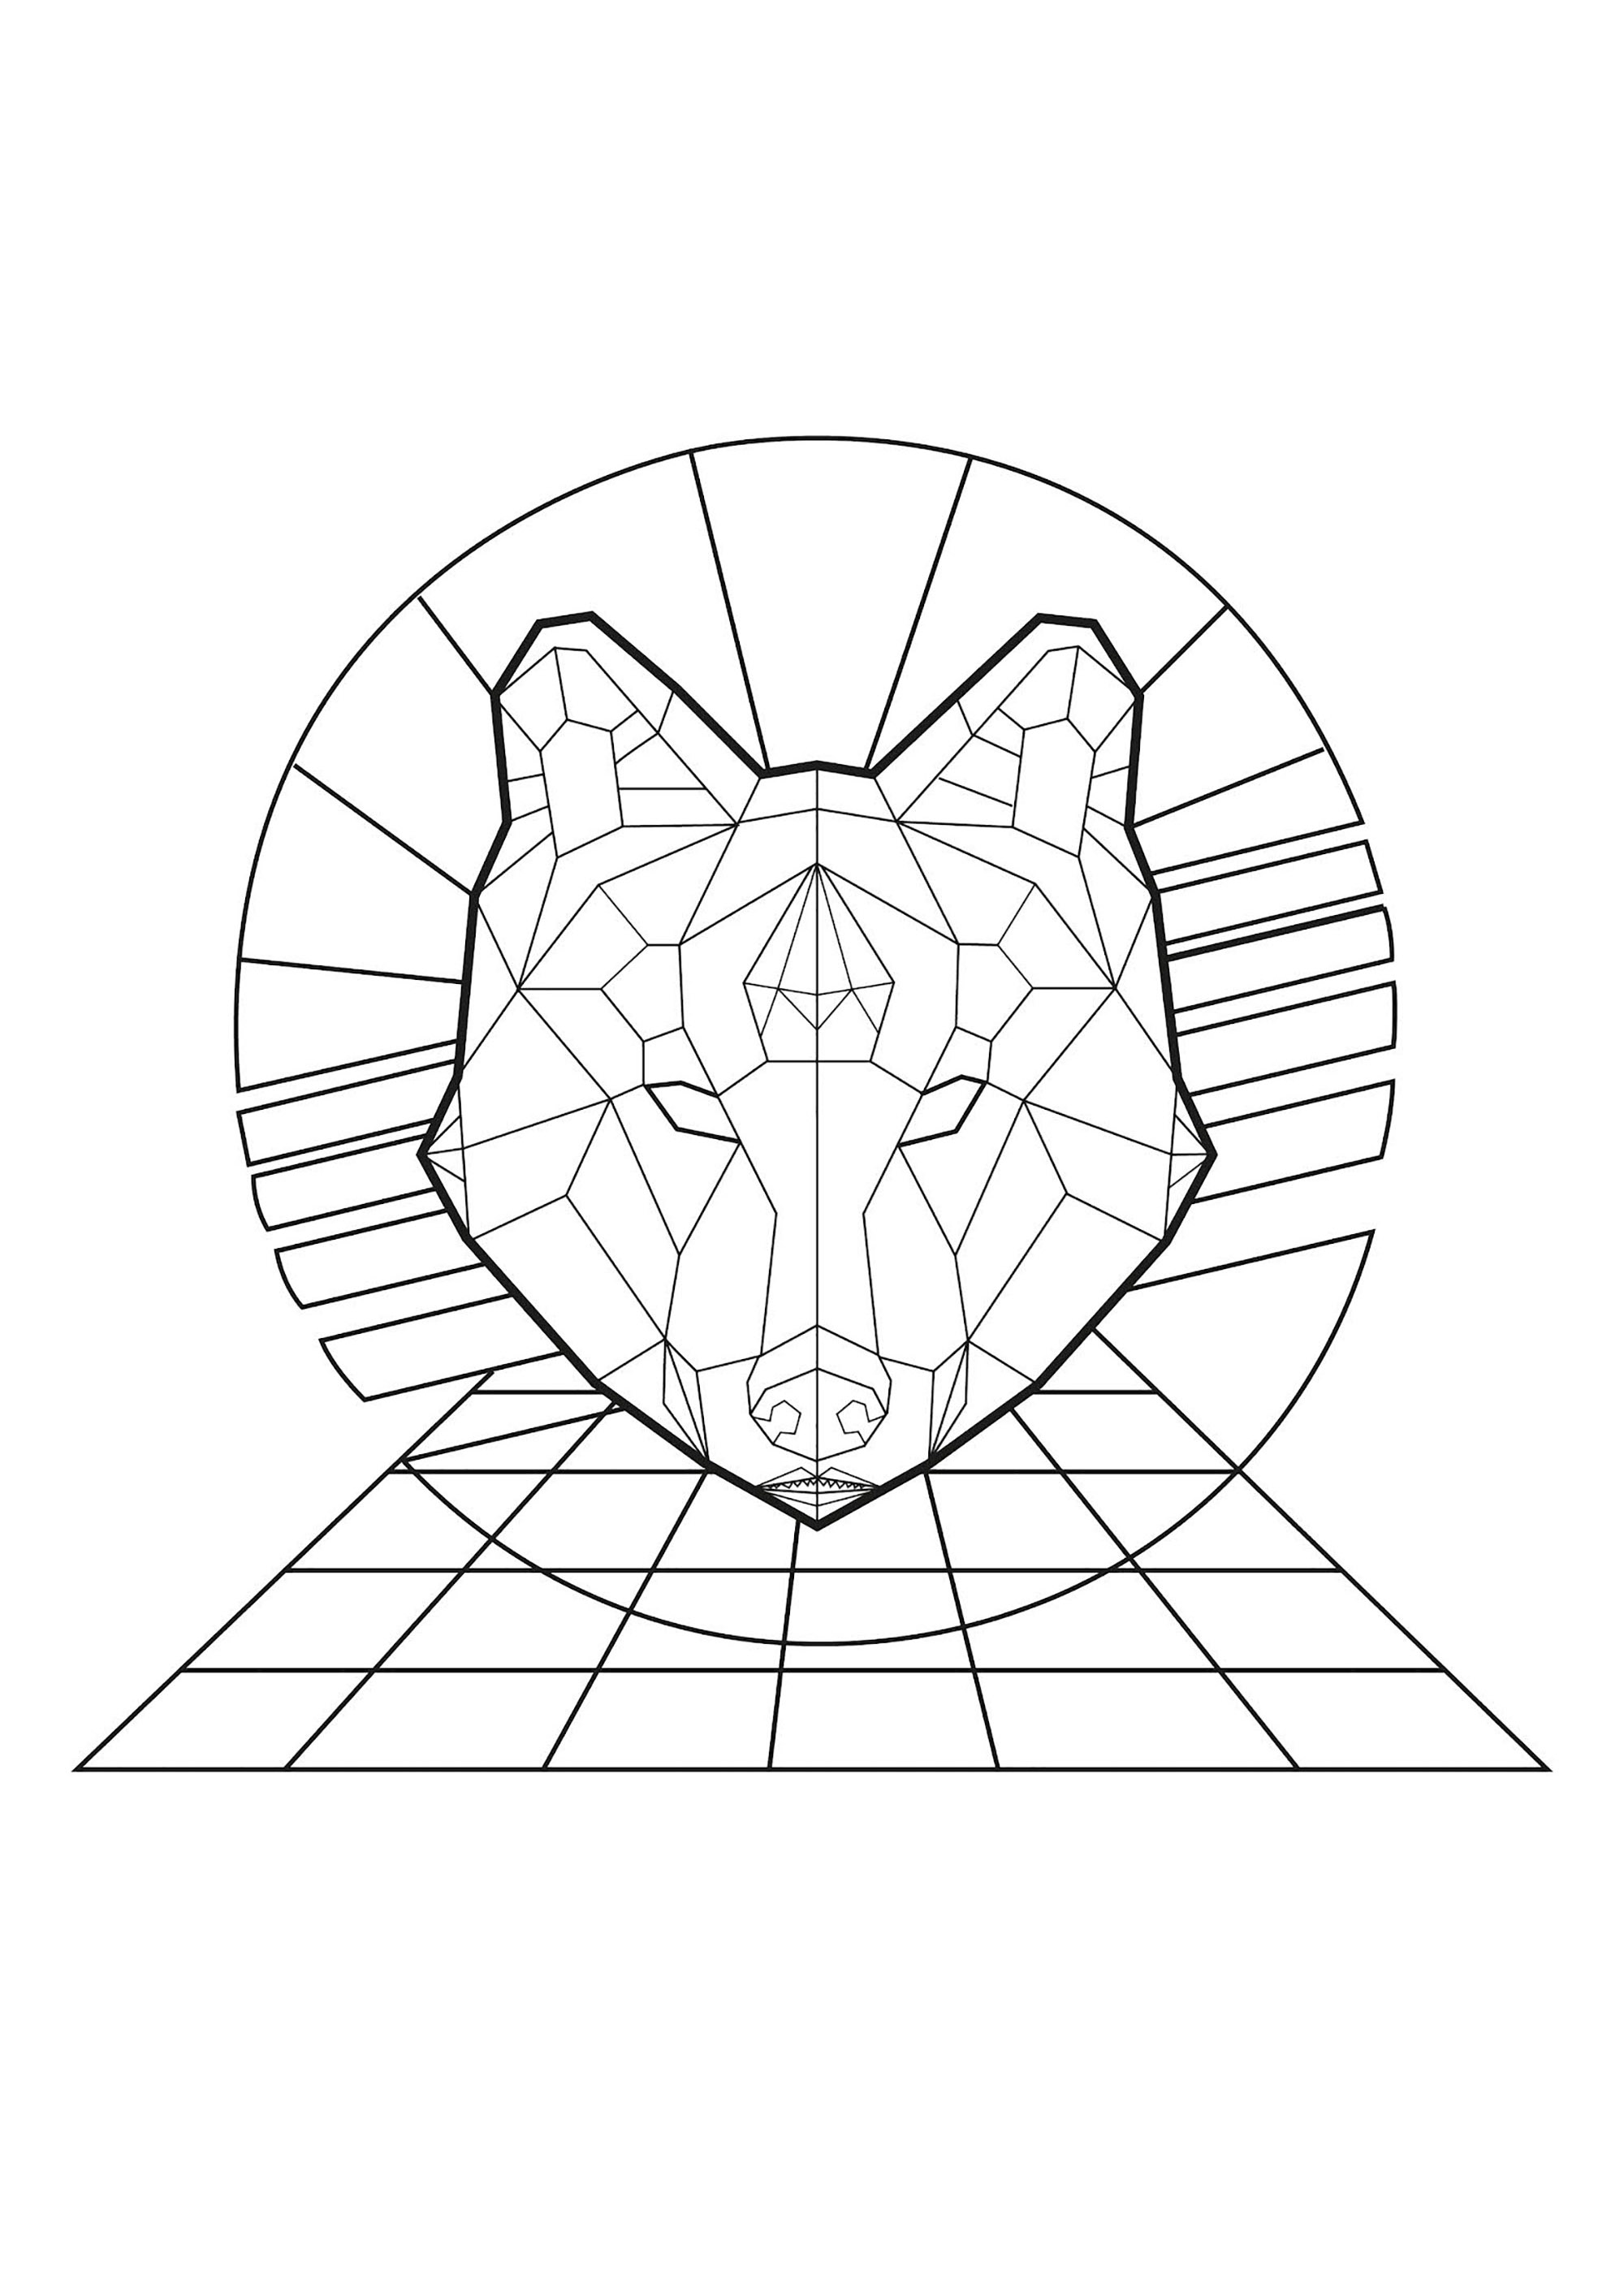 Gueule de loup dessinée de manière géométrique